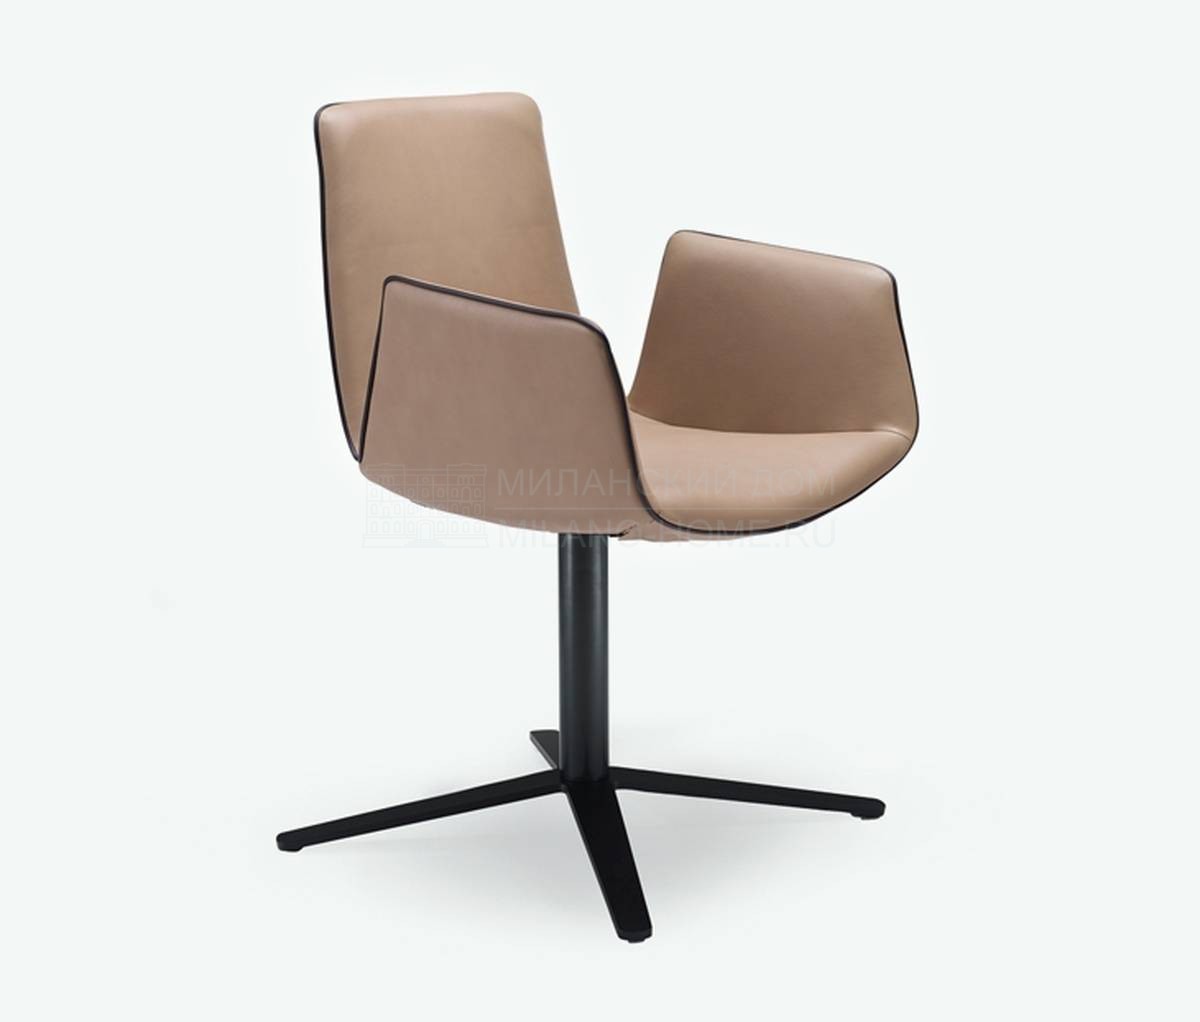 Полукресло Amelie chair high leather из Германии фабрики FREIFRAU